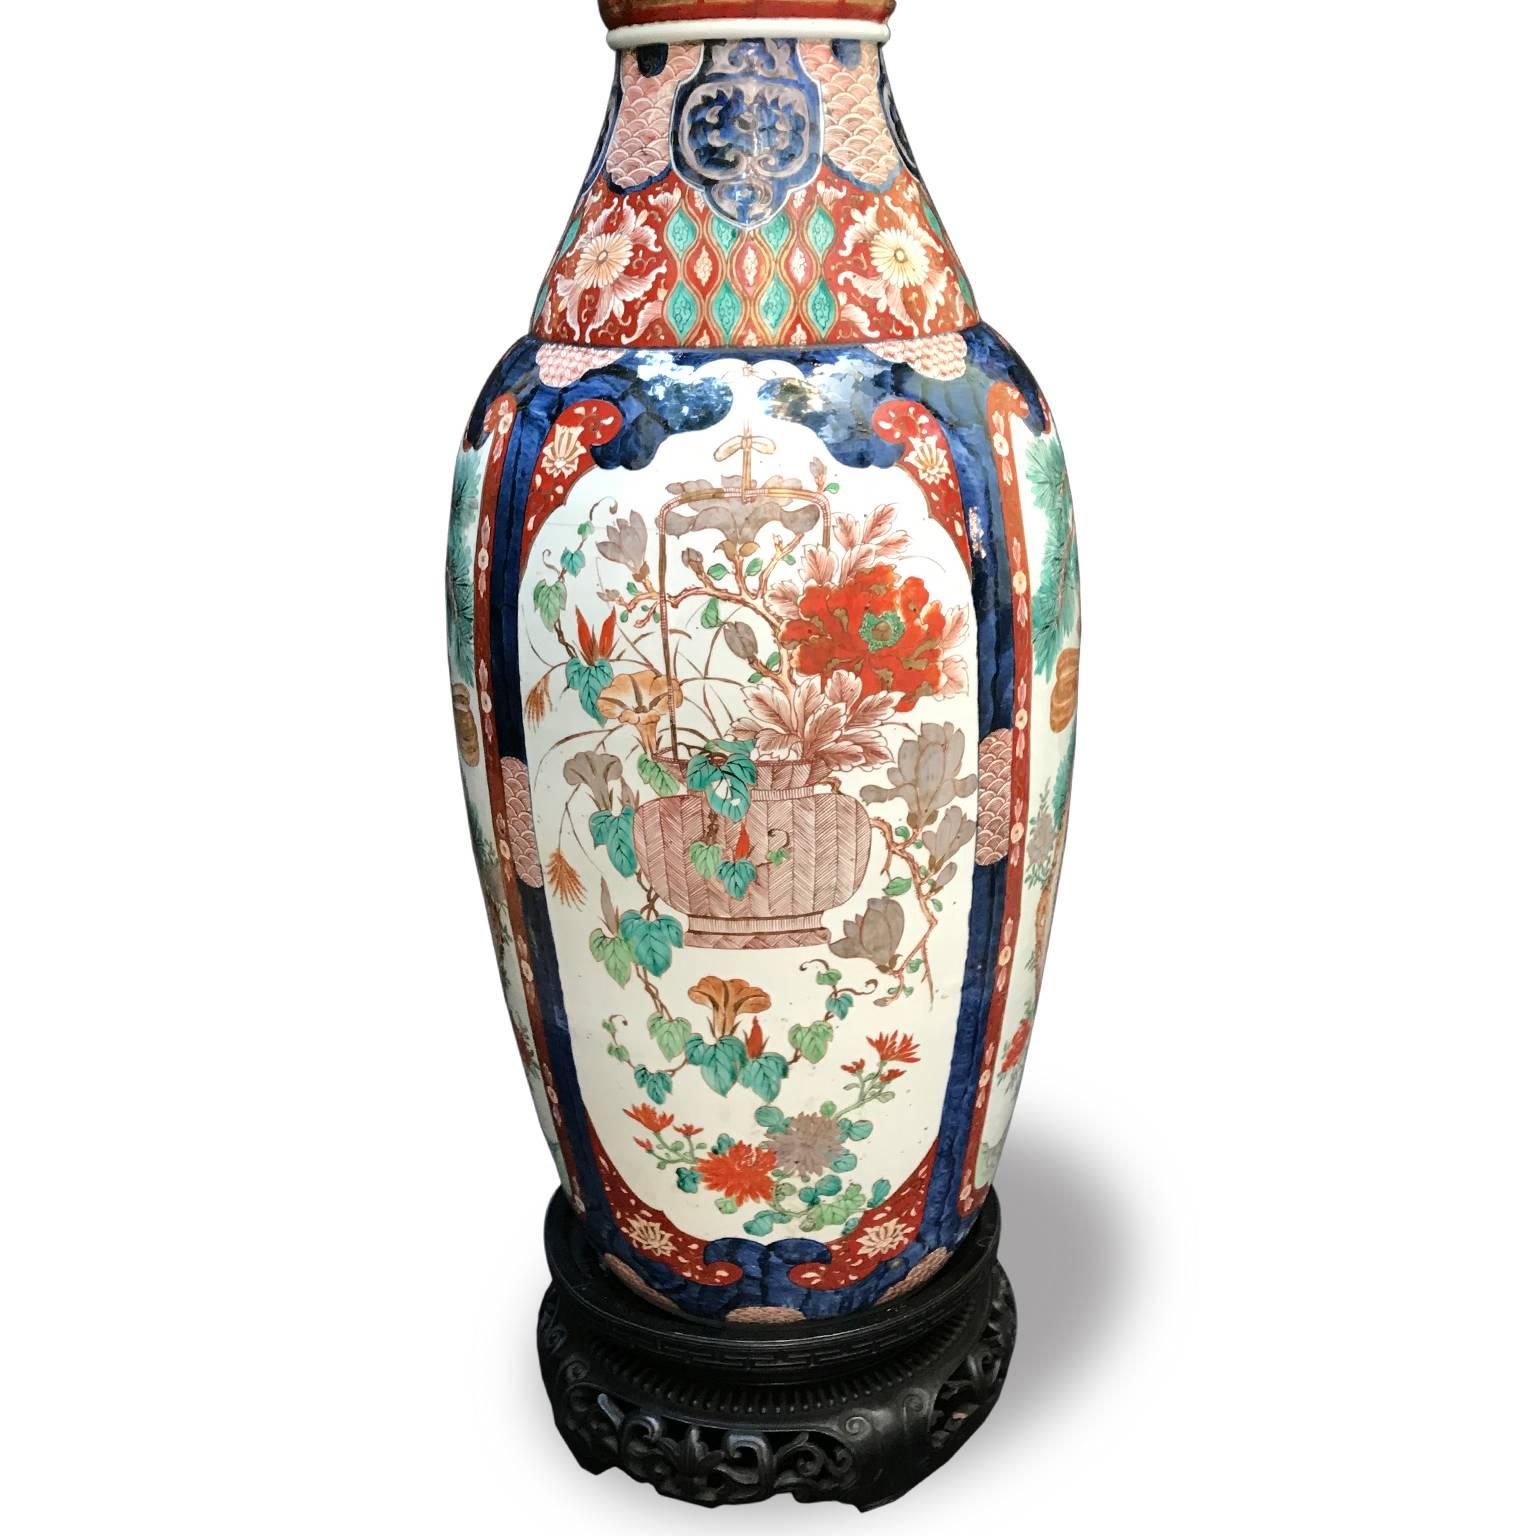 Pair of Large Imari Vases 19th Century Japanese Blue Red White Porcelain Vases 2